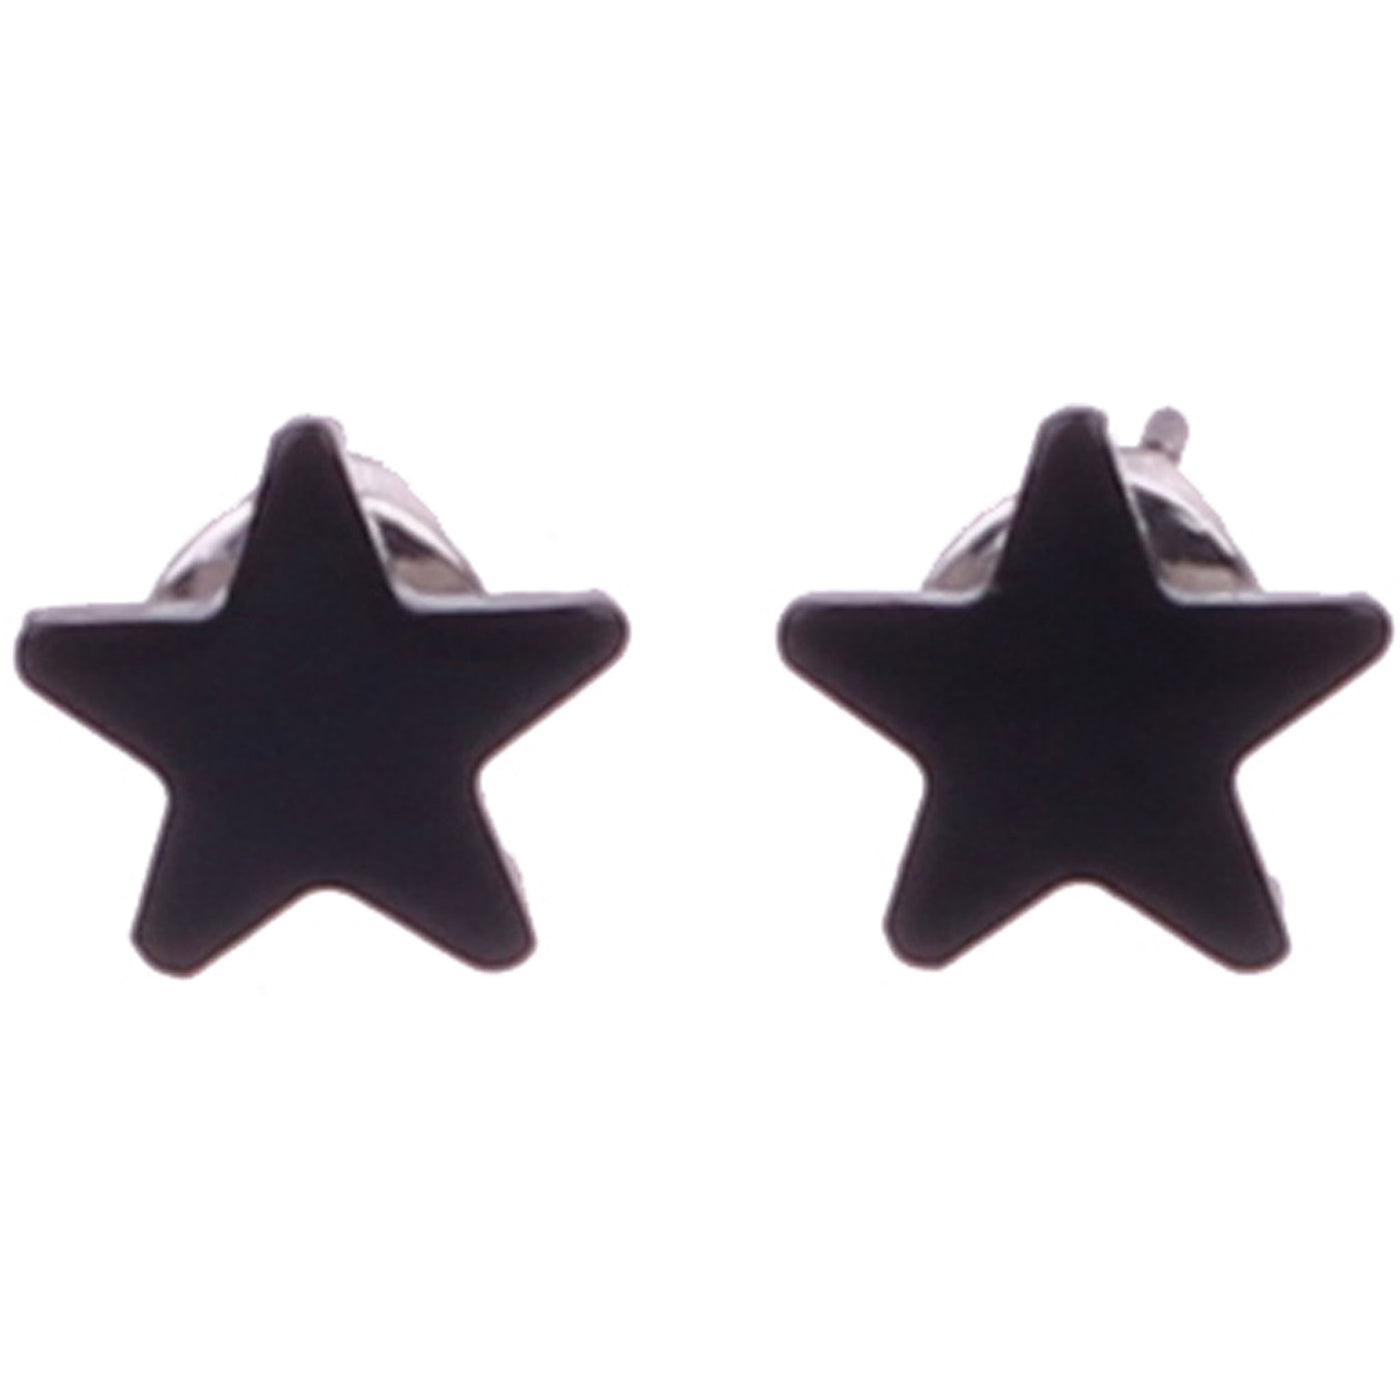 Star earrings 7mm